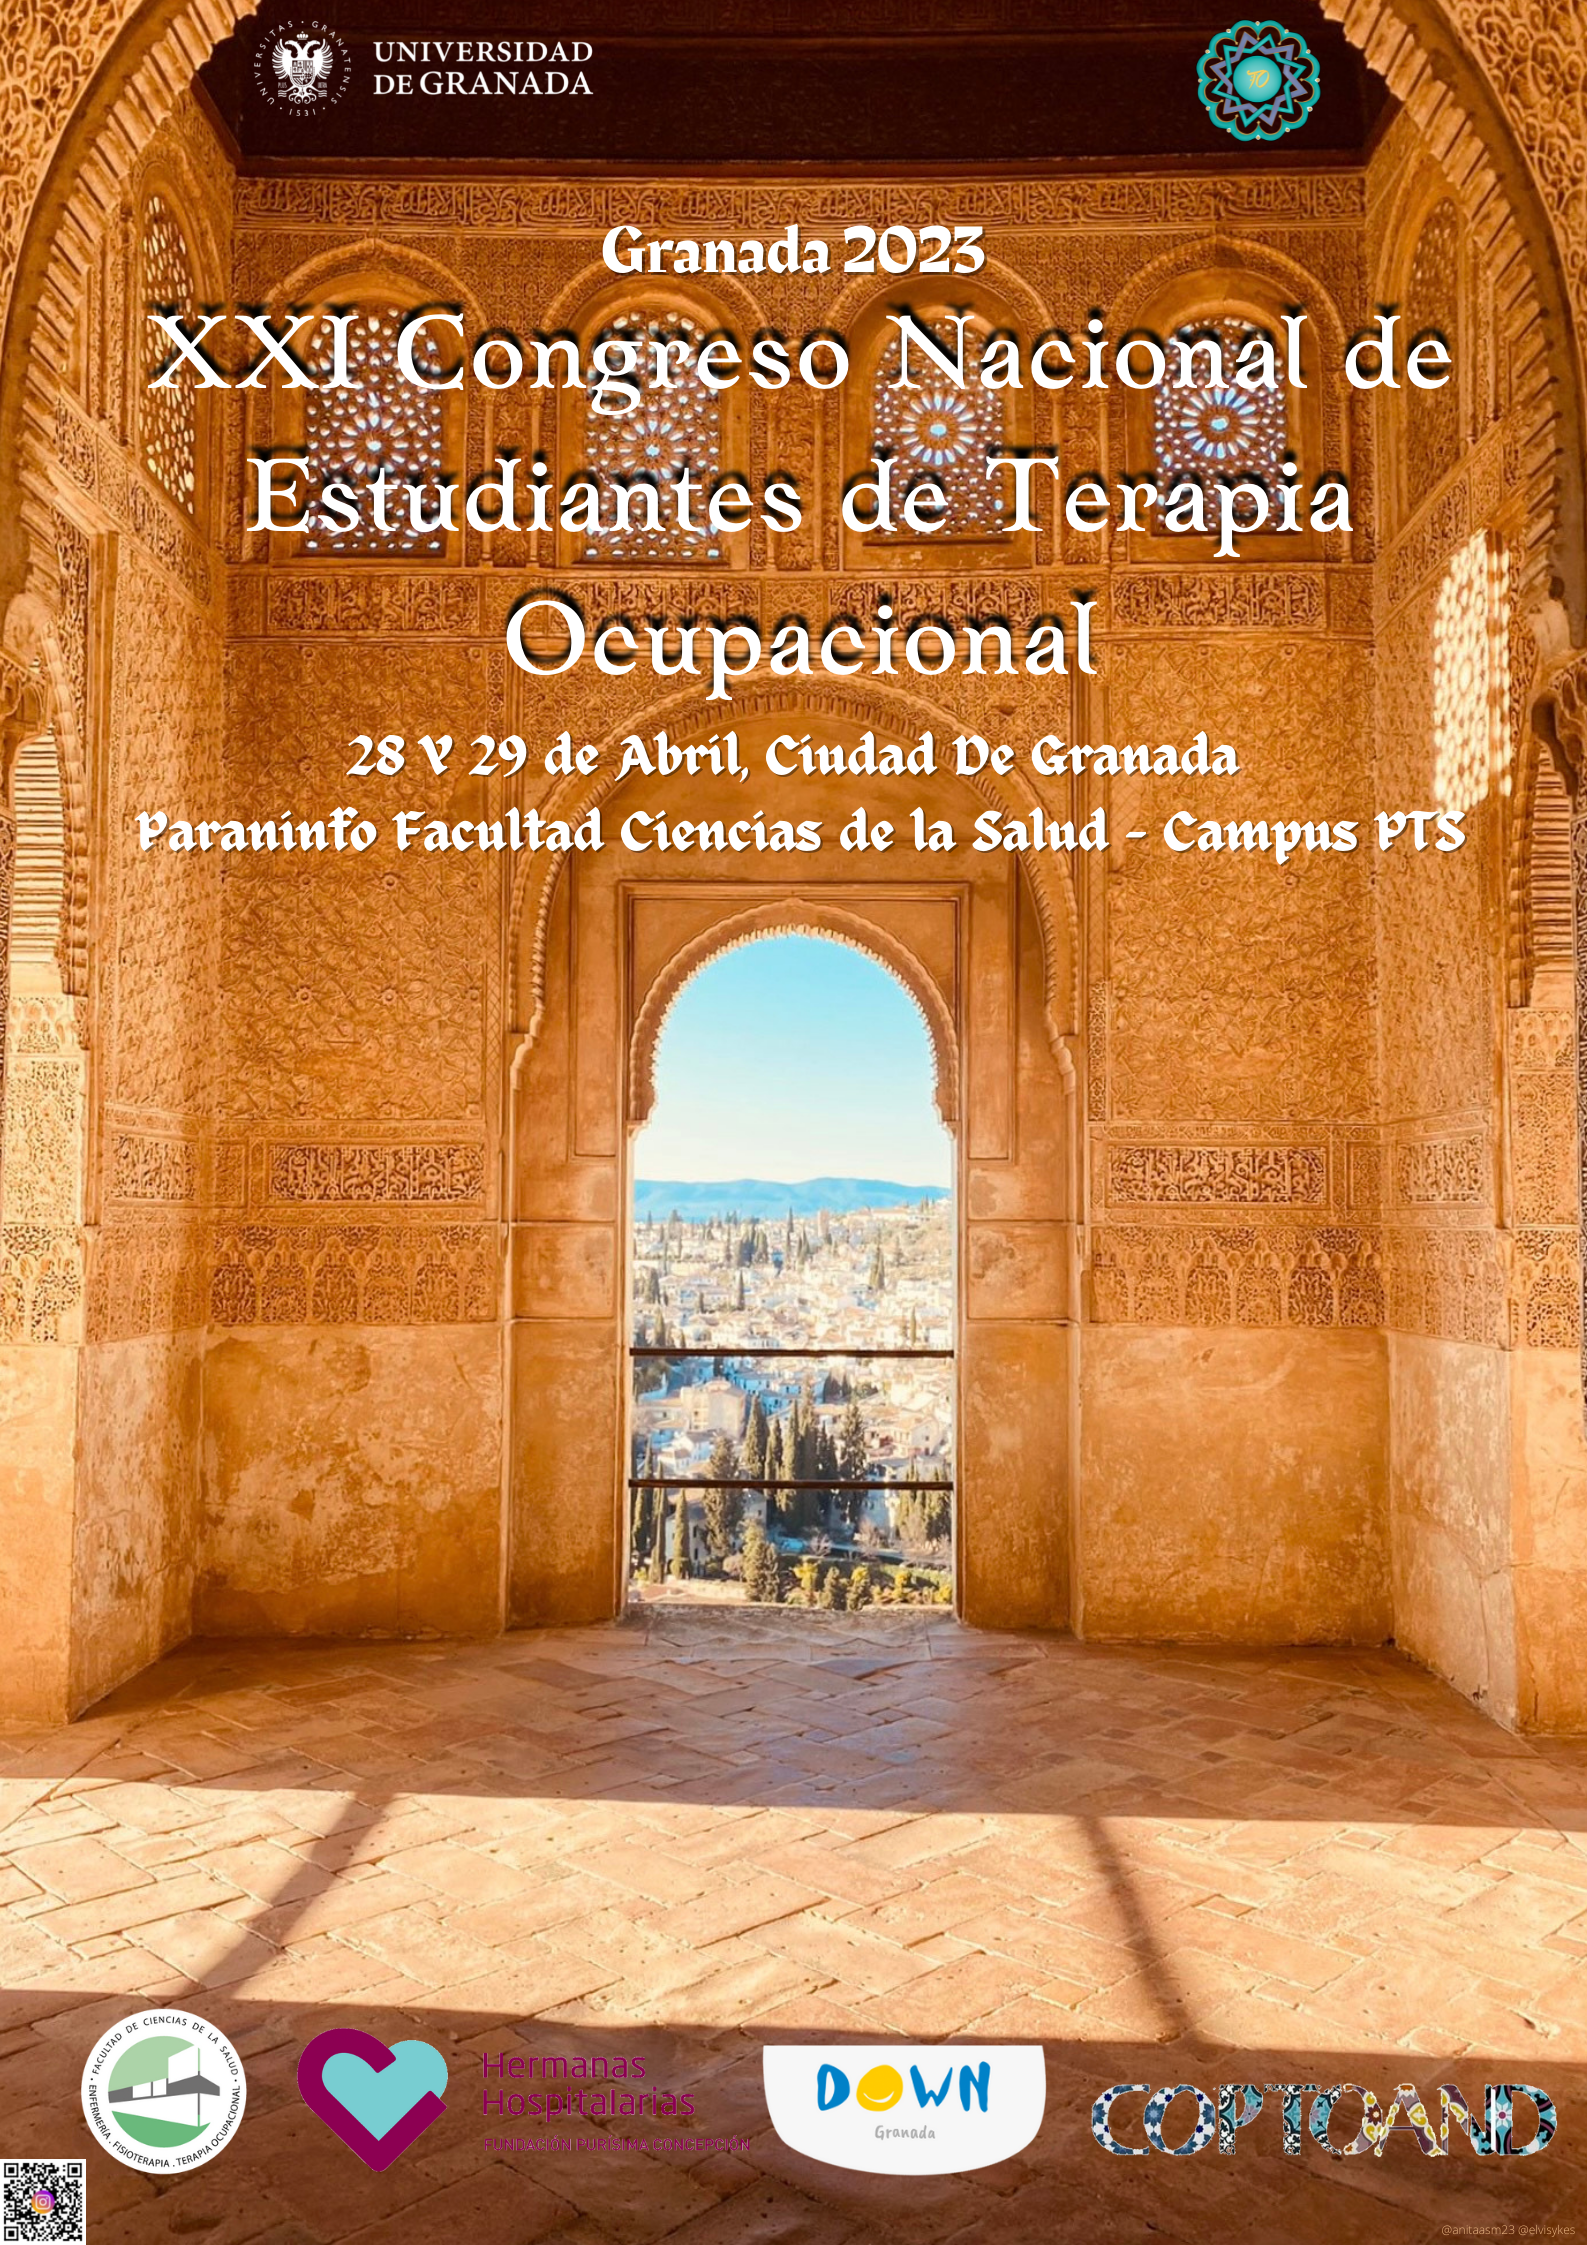 XXI Congreso Nacional de Estudiantes de Terapia Ocupacional – Congresos Universidad de Granada